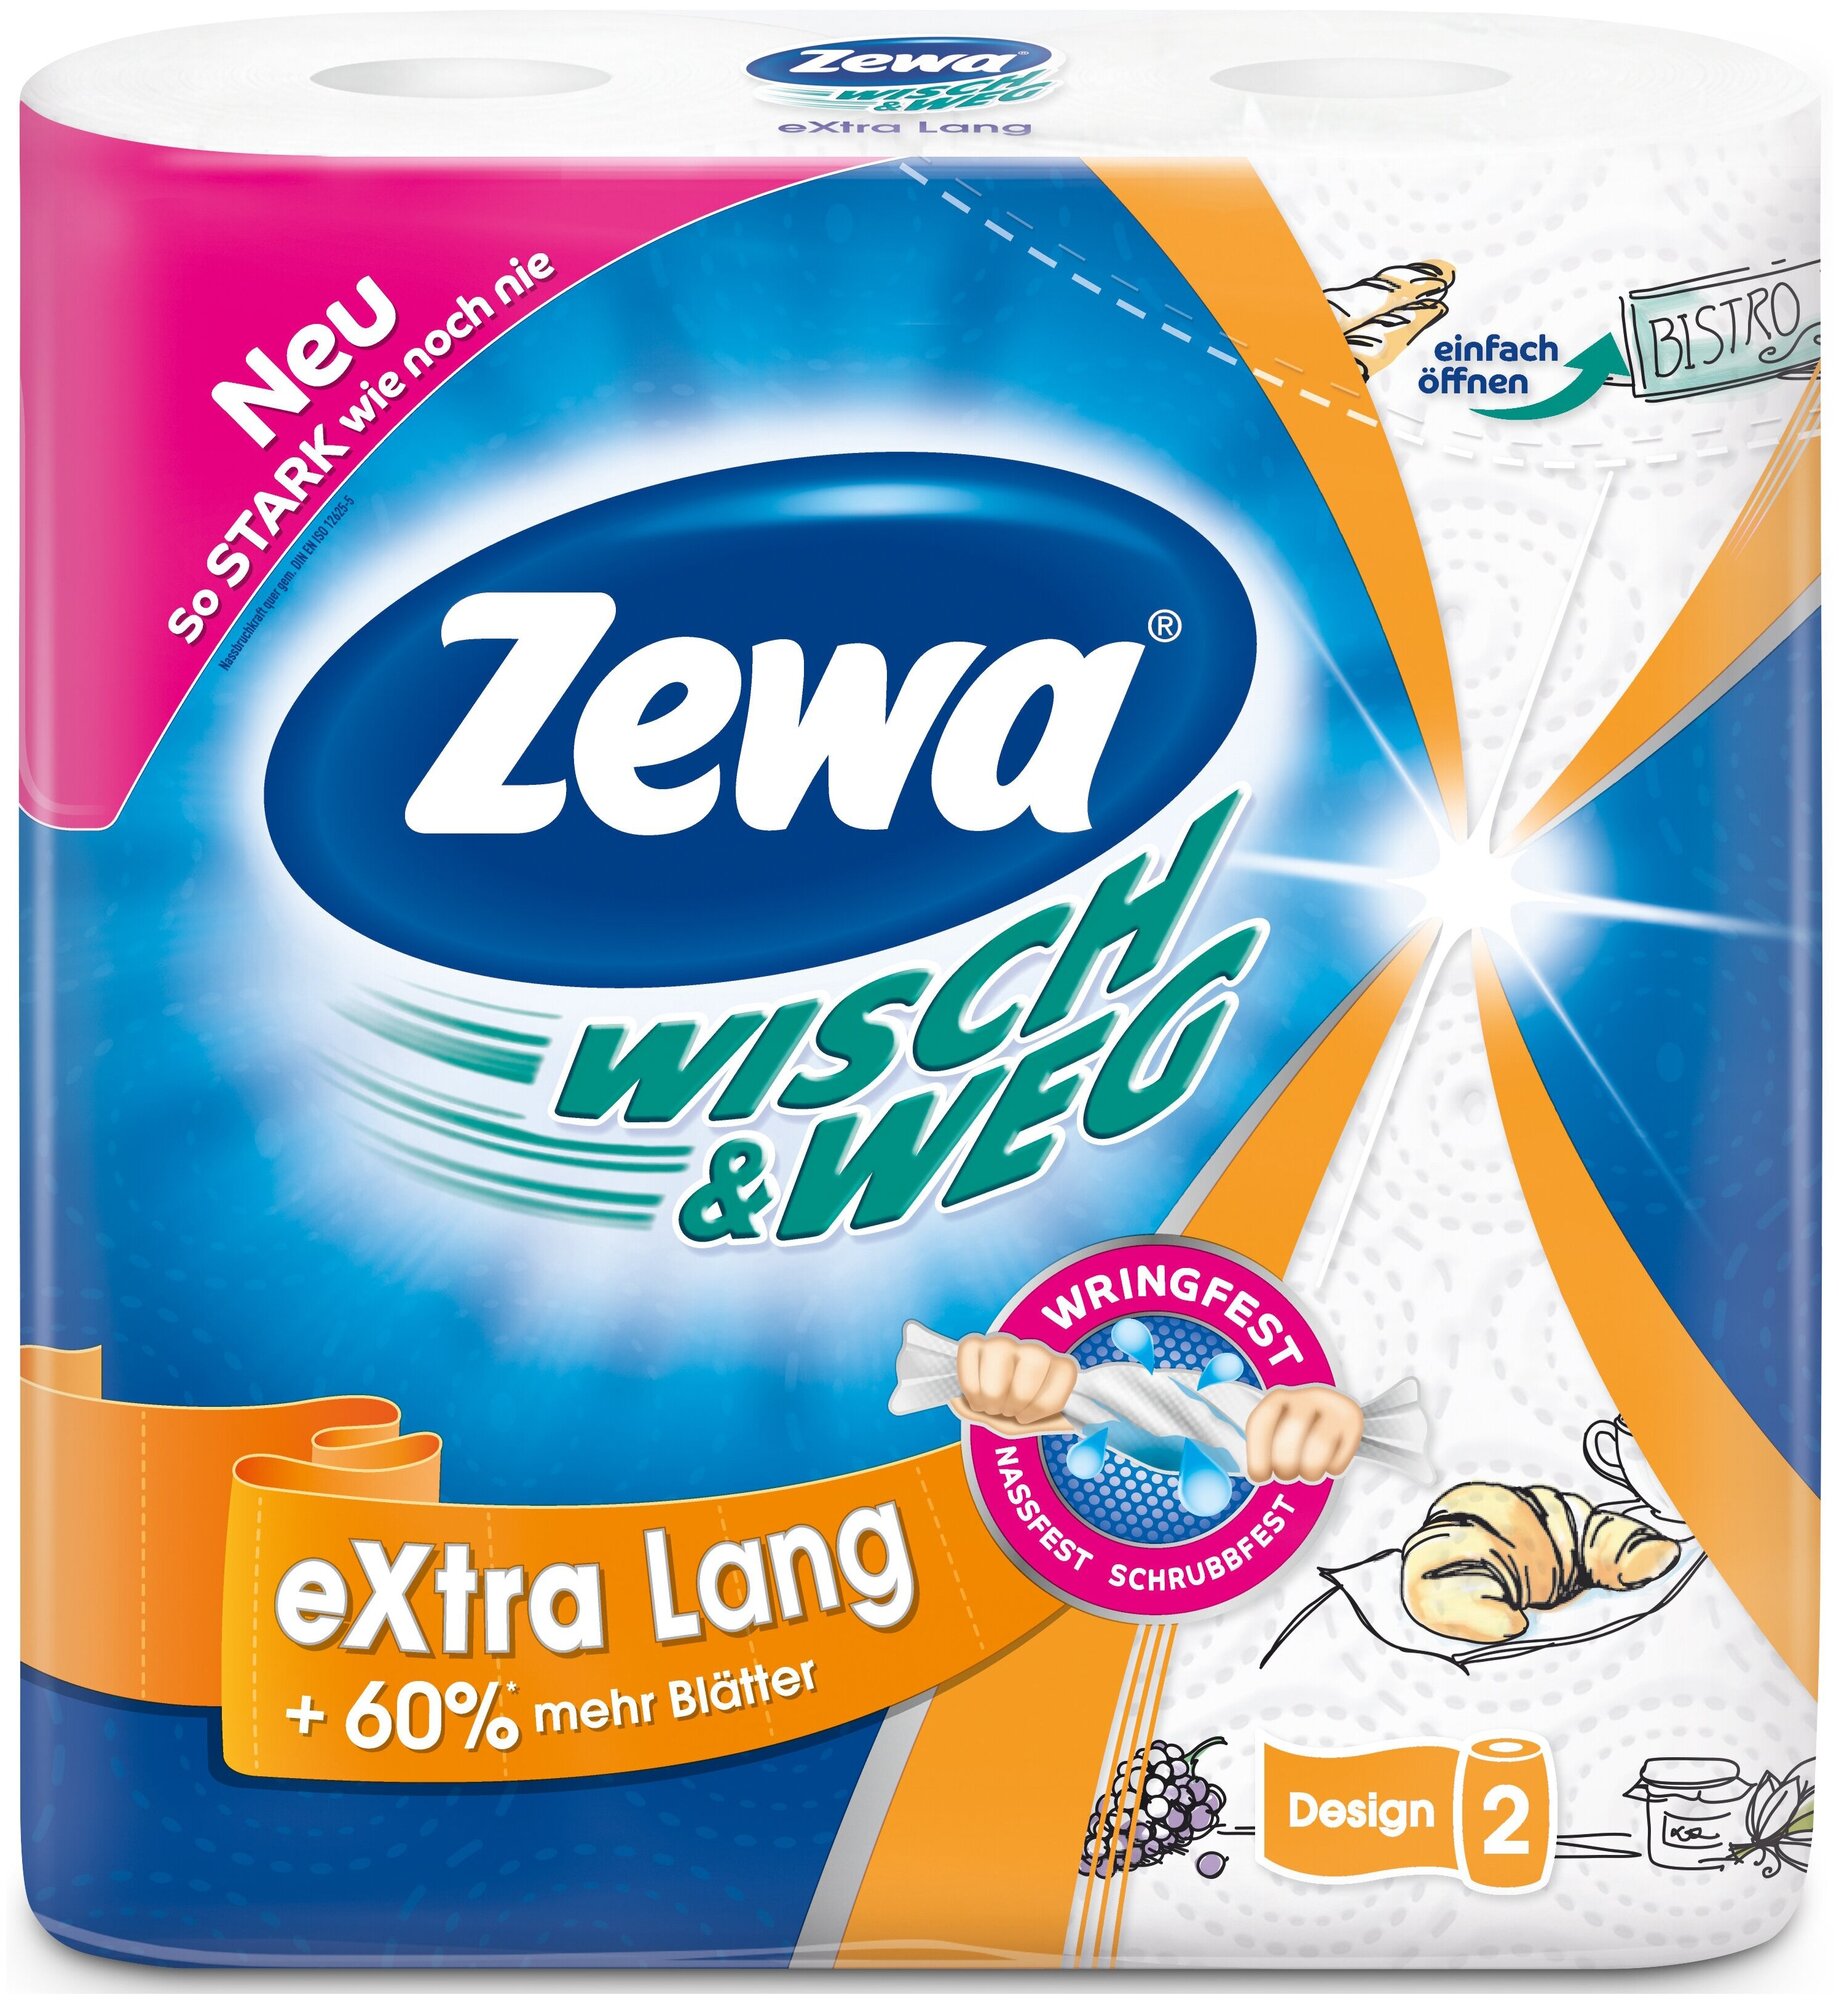 Бумажные полотенца Zewa Wisch & Weg 2 рулона 2 слоя Эссиэй хайджин - фото №2